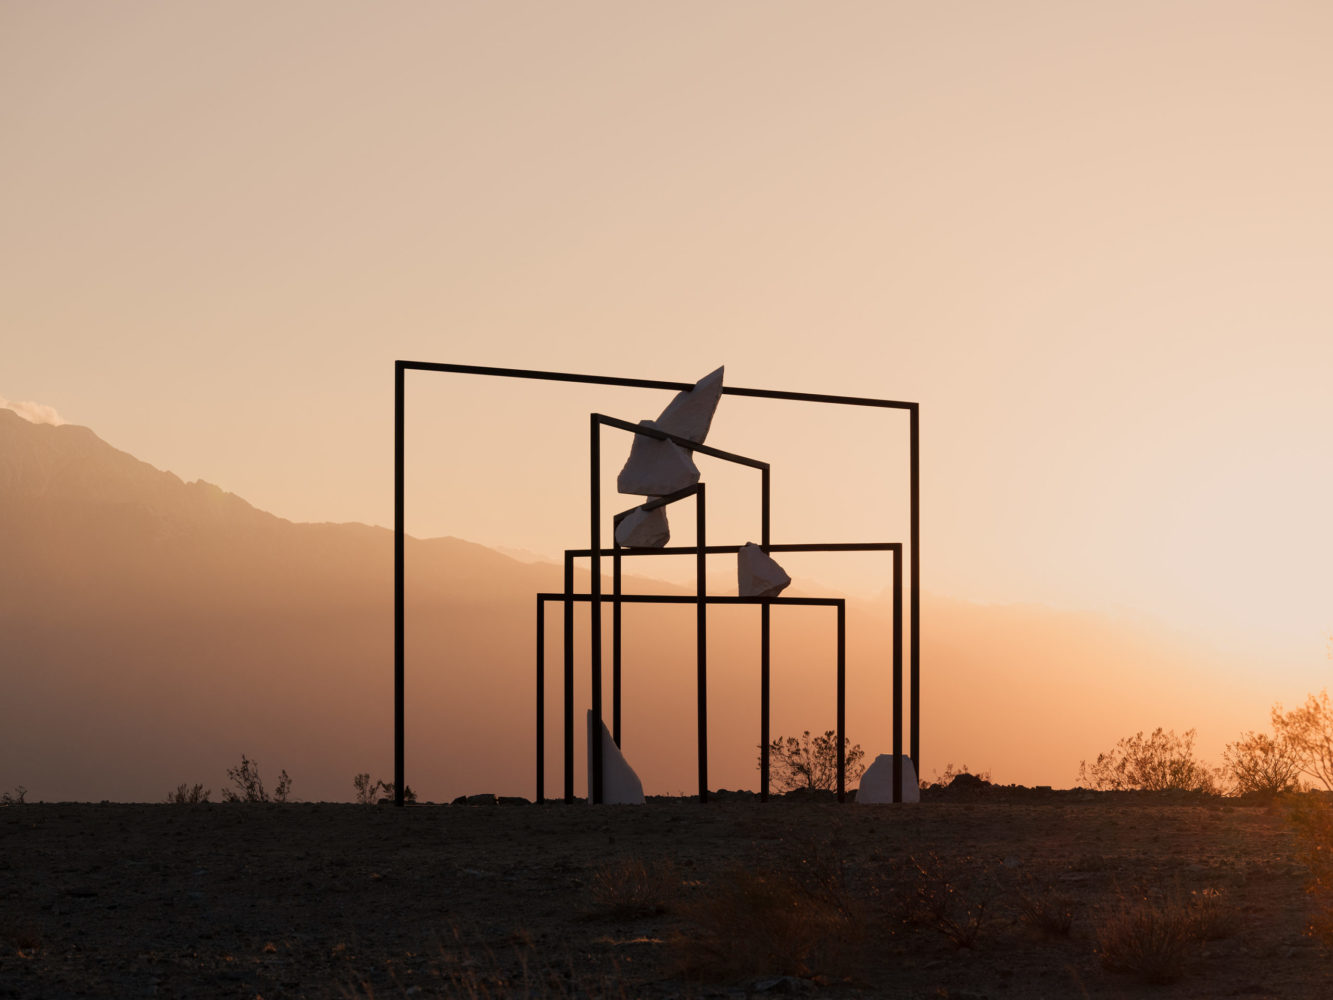 Desert X installation view of Alicja Kwade